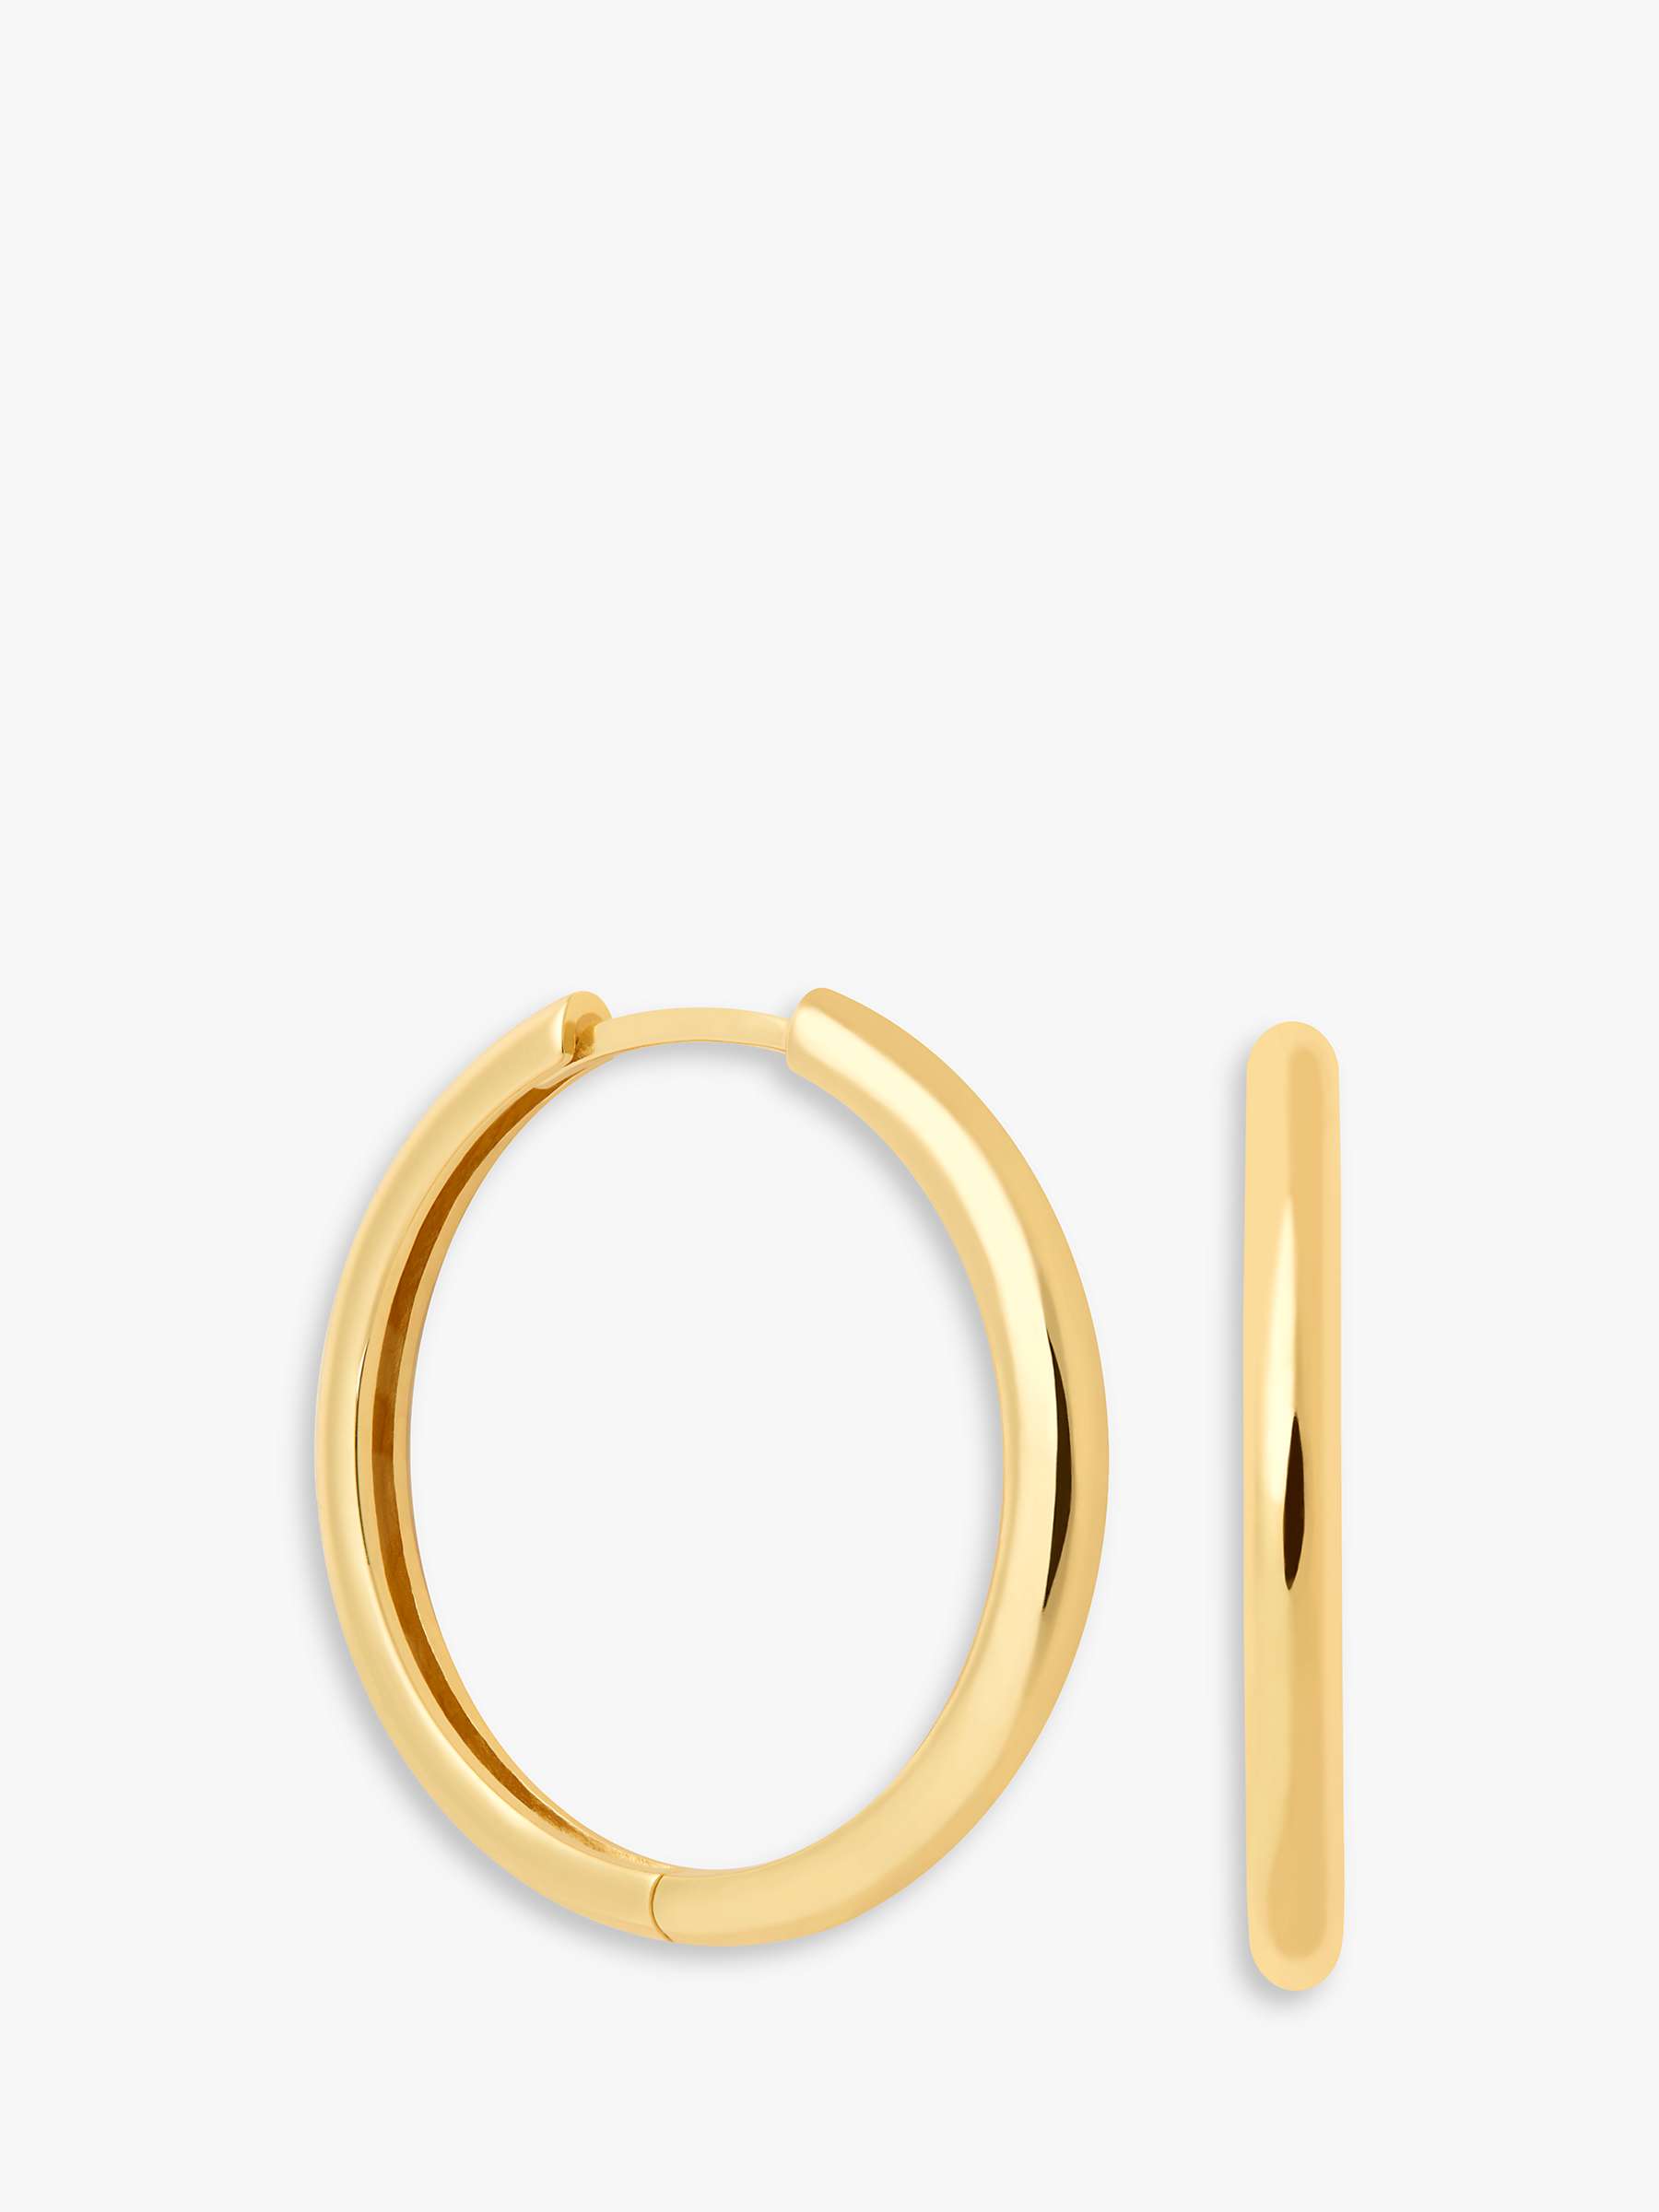 Astrid & Miyu Simple Hinge Hoop Earrings, Gold at John Lewis & Partners